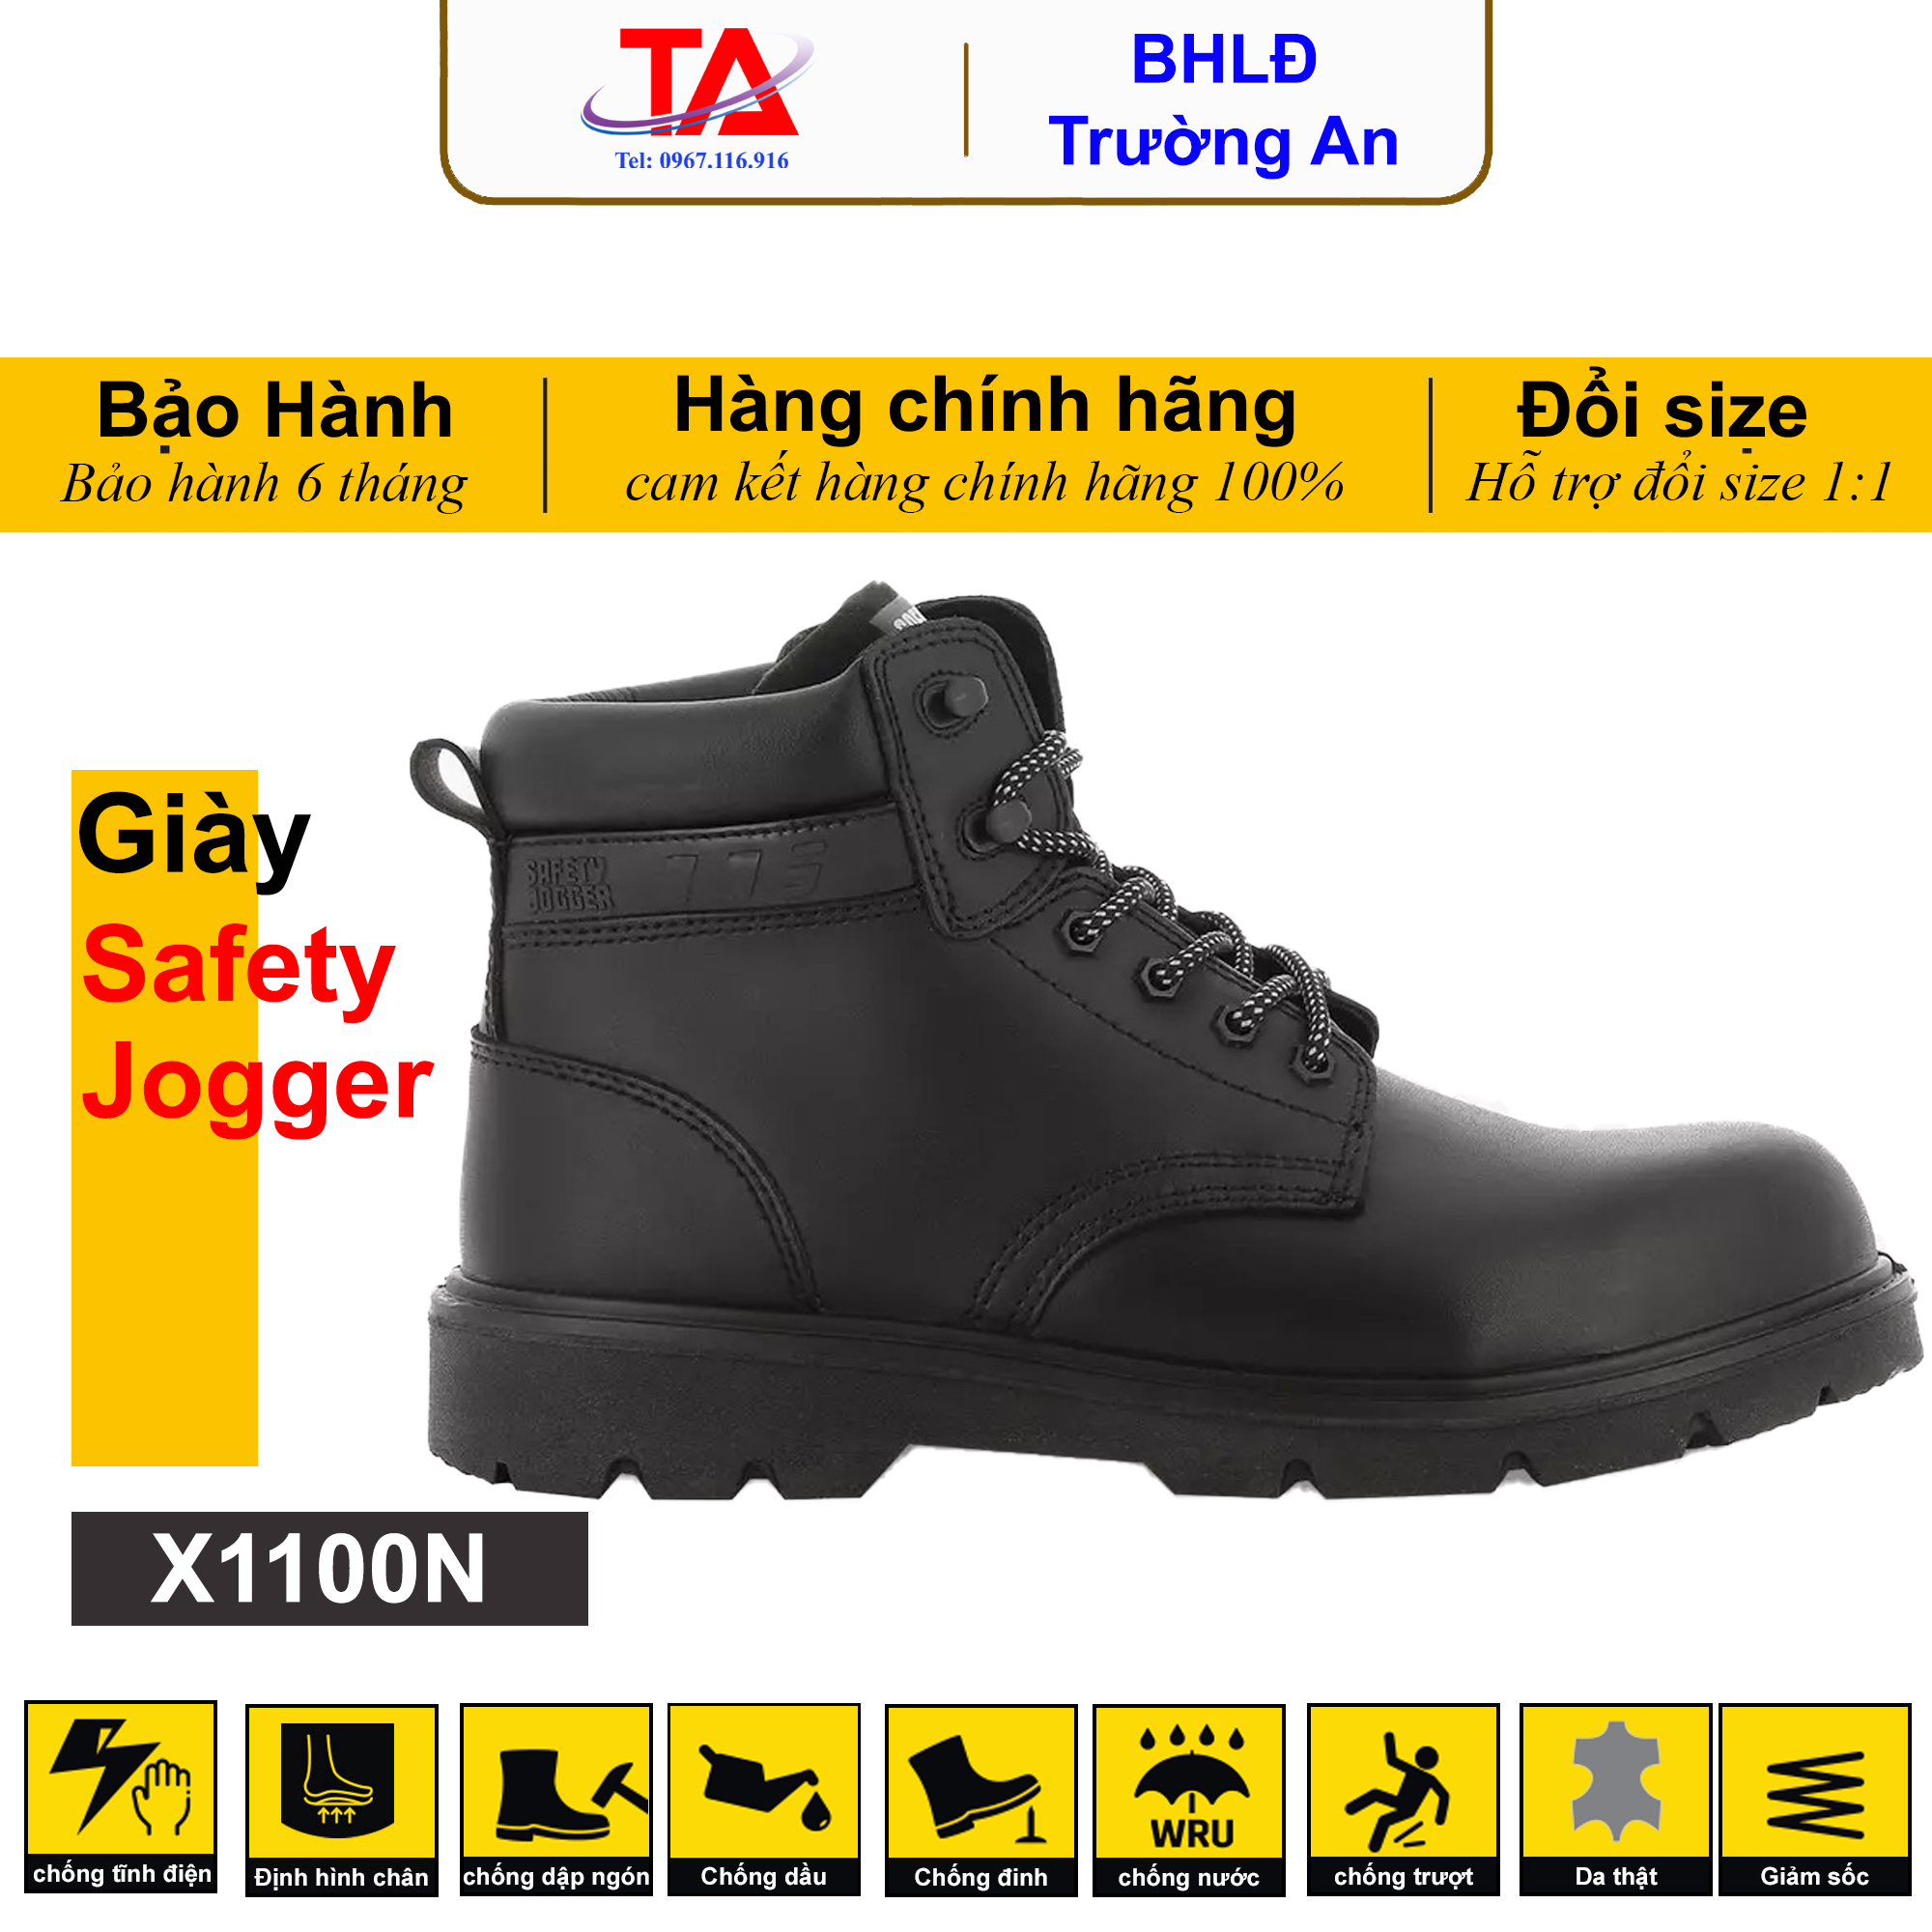 Giày bảo hộ cổ cao X1100N của Safety Jogger